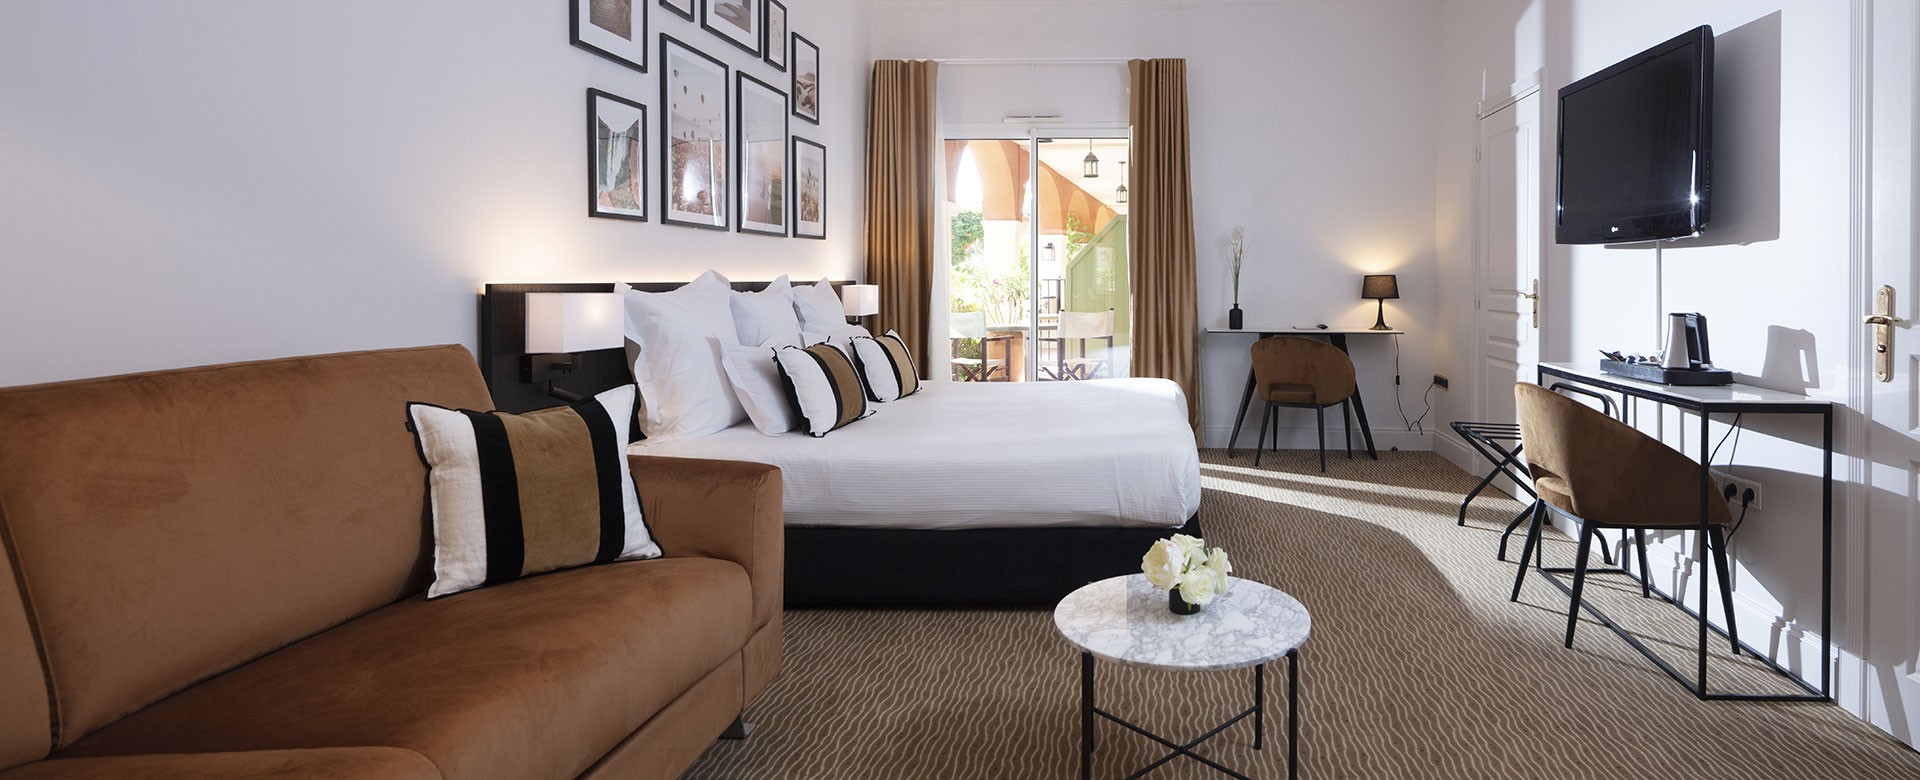 Chambre Junior Suite du Palmyra Golf, hôtel 4 étoiles au Cap d’Agde, avec terrasse privative